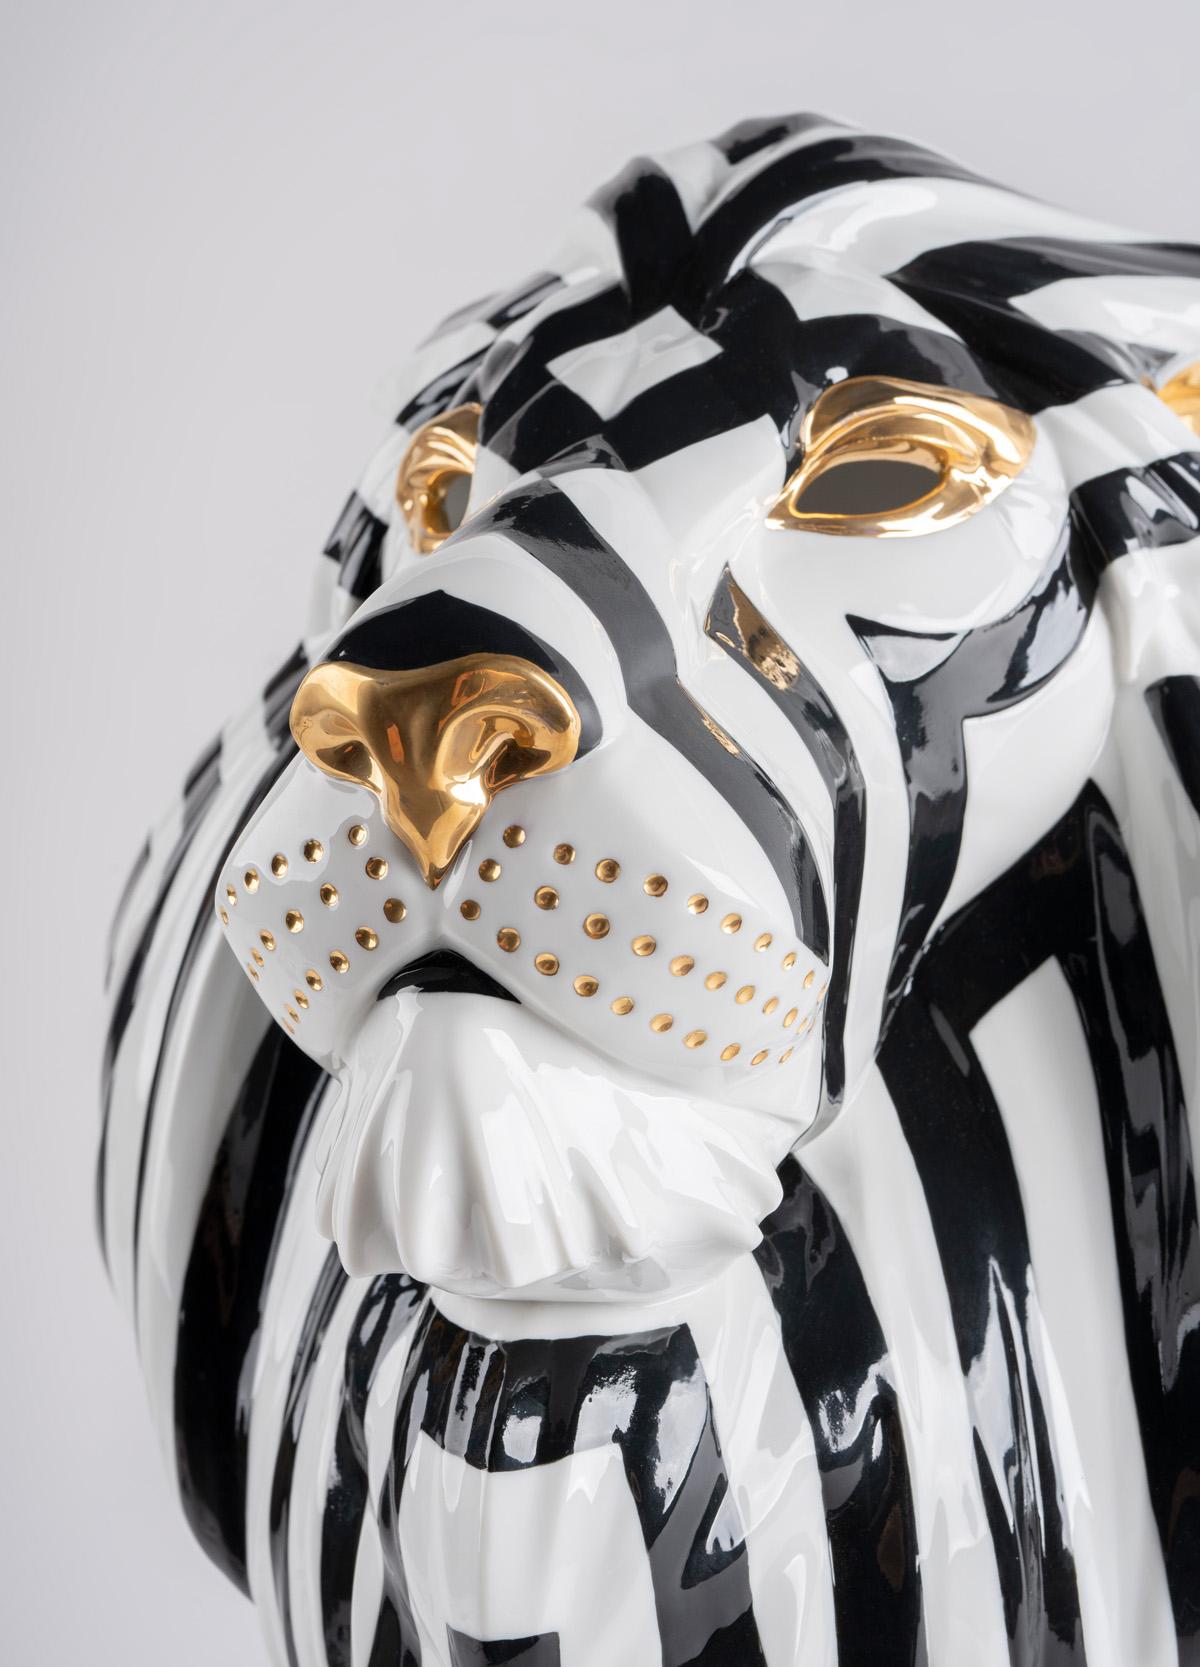 Porzellankreation, inspiriert von traditionellen afrikanischen Masken. Die Lion Mask reiht sich in die Kollektion Fierce Portraits ein, eine Serie von Kreationen, die die traditionelle Kunst der afrikanischen Stammesmasken in die Welt des Porzellans